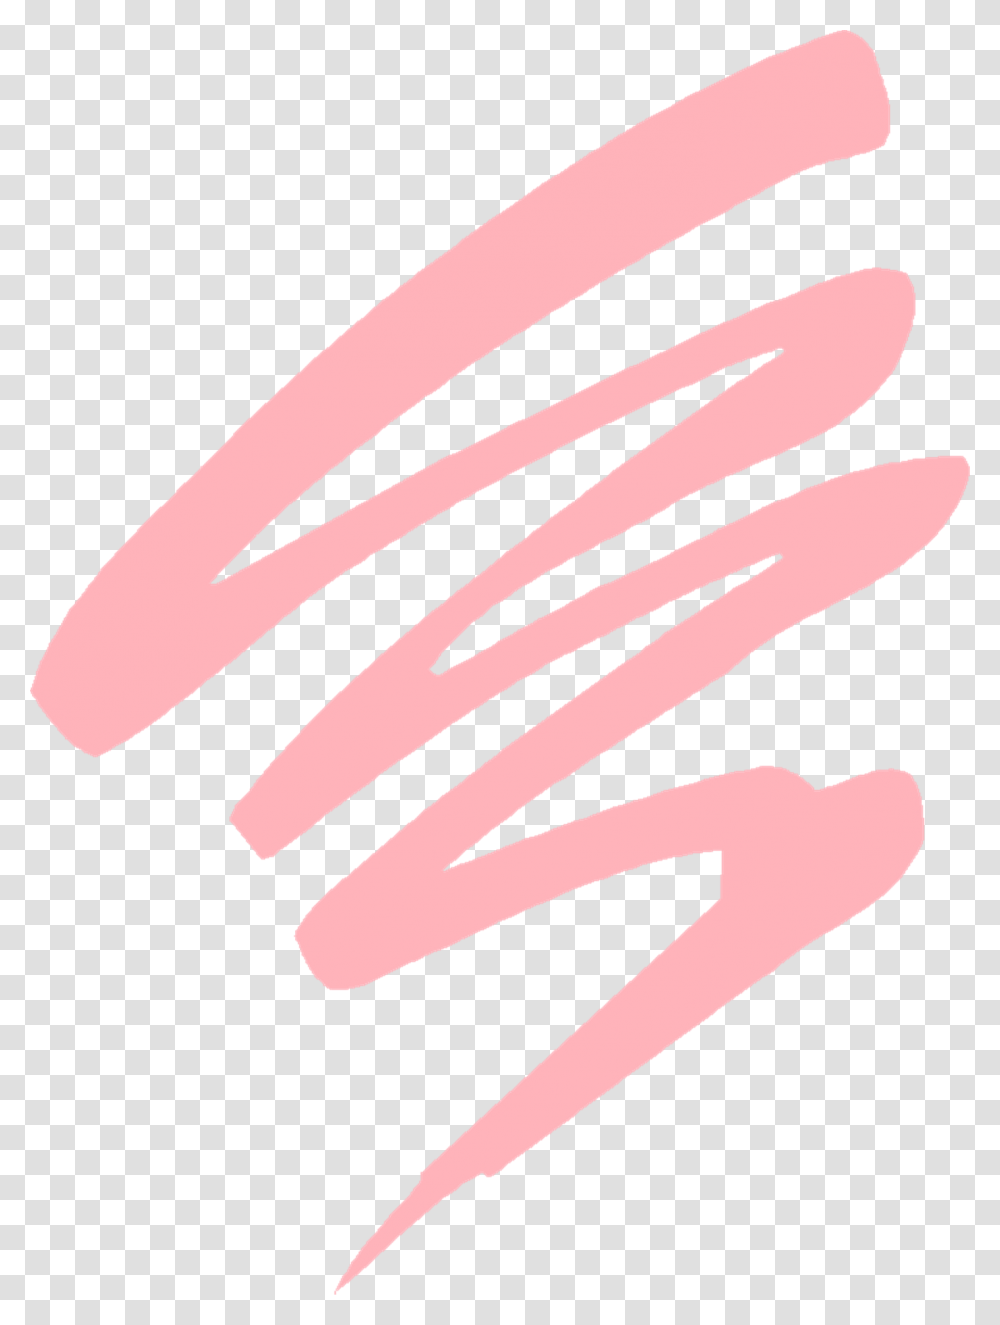 Pink Splash Lines Free Image On Pixabay Light Pink Design, Text, Label, Photography, Face Transparent Png